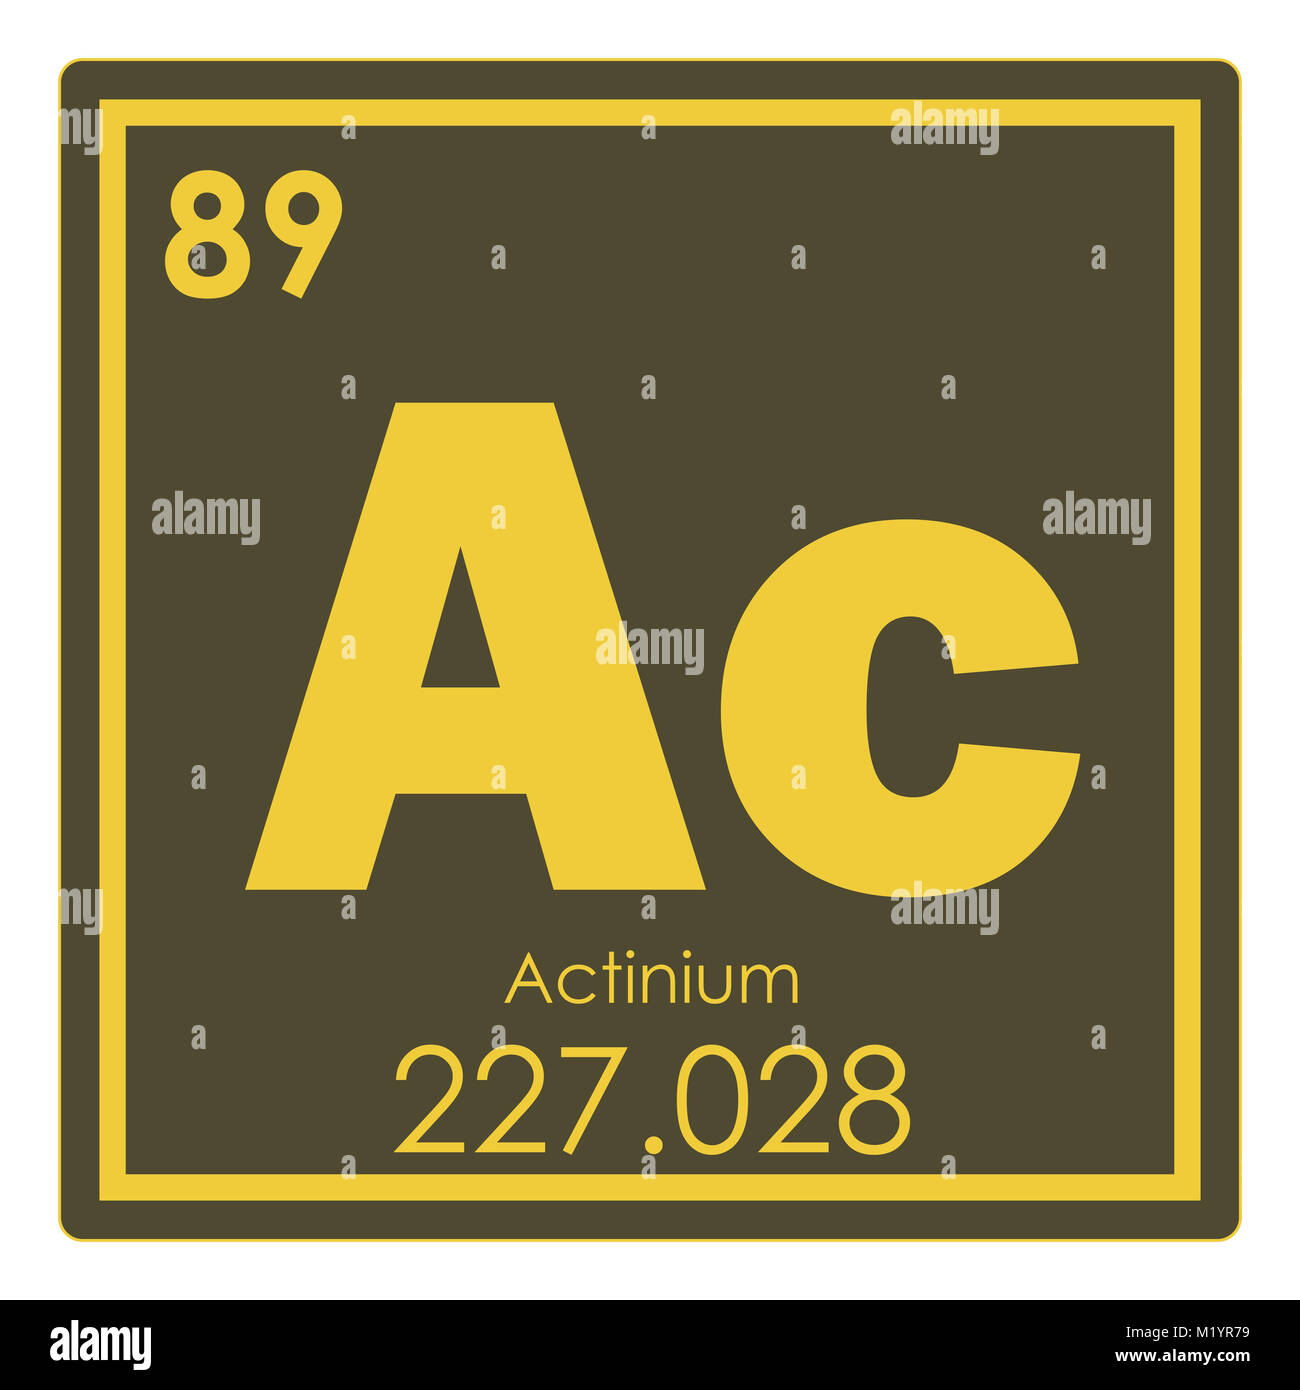 Actinium chemical element periodic table science symbol Stock Photo